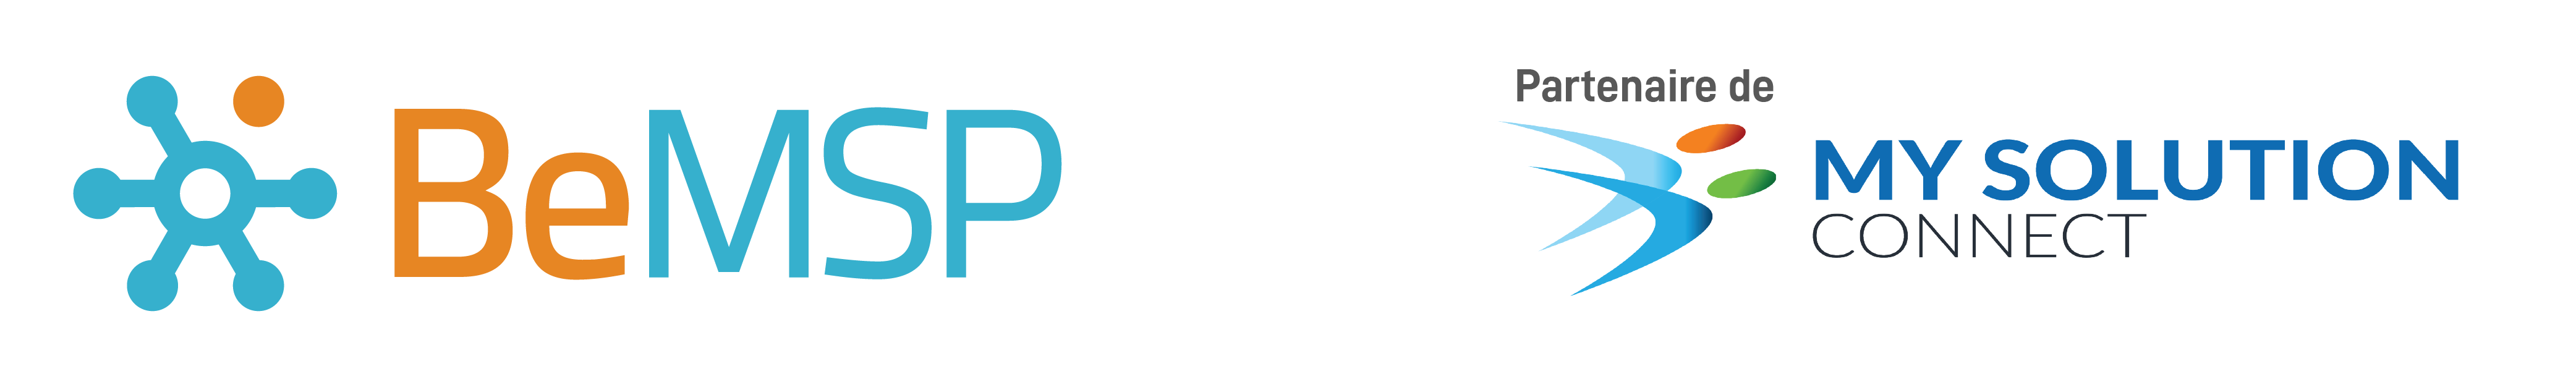 logo BeMSP-mysolutionconnect